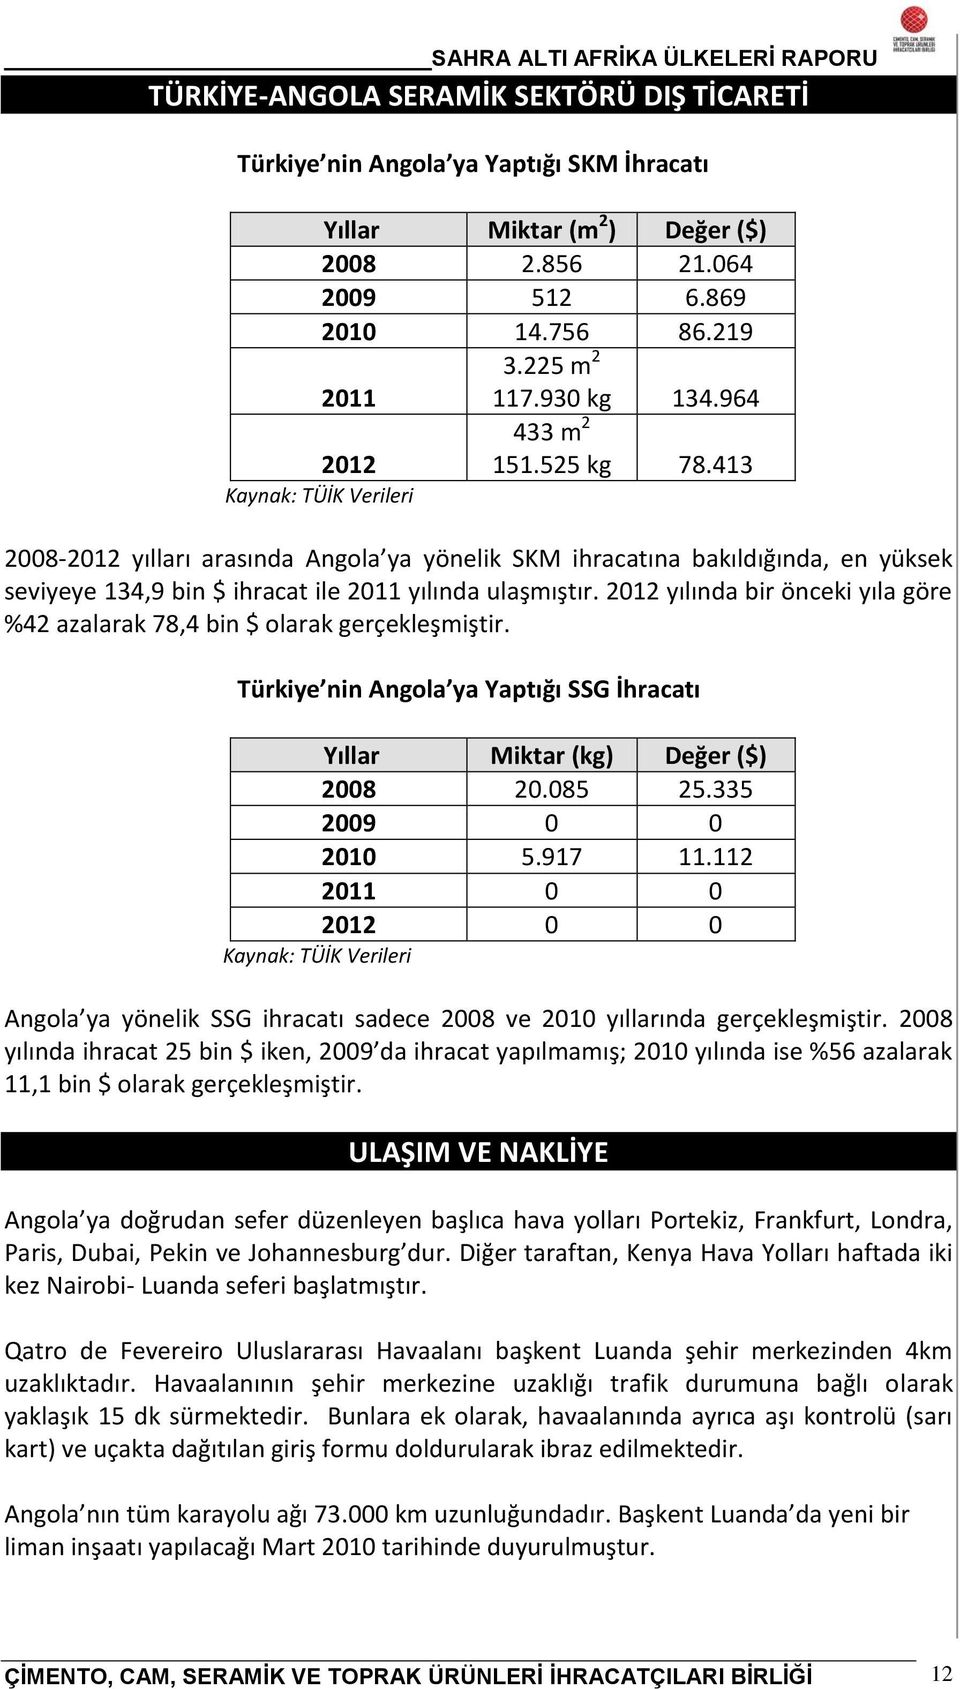 2012 yılında bir önceki yıla göre %42 azalarak 78,4 bin $ olarak gerçekleşmiştir. Türkiye nin Angola ya Yaptığı SSG İhracatı Yıllar Miktar (kg) Değer ($) 2008 20.085 25.335 2009 0 0 2010 5.917 11.